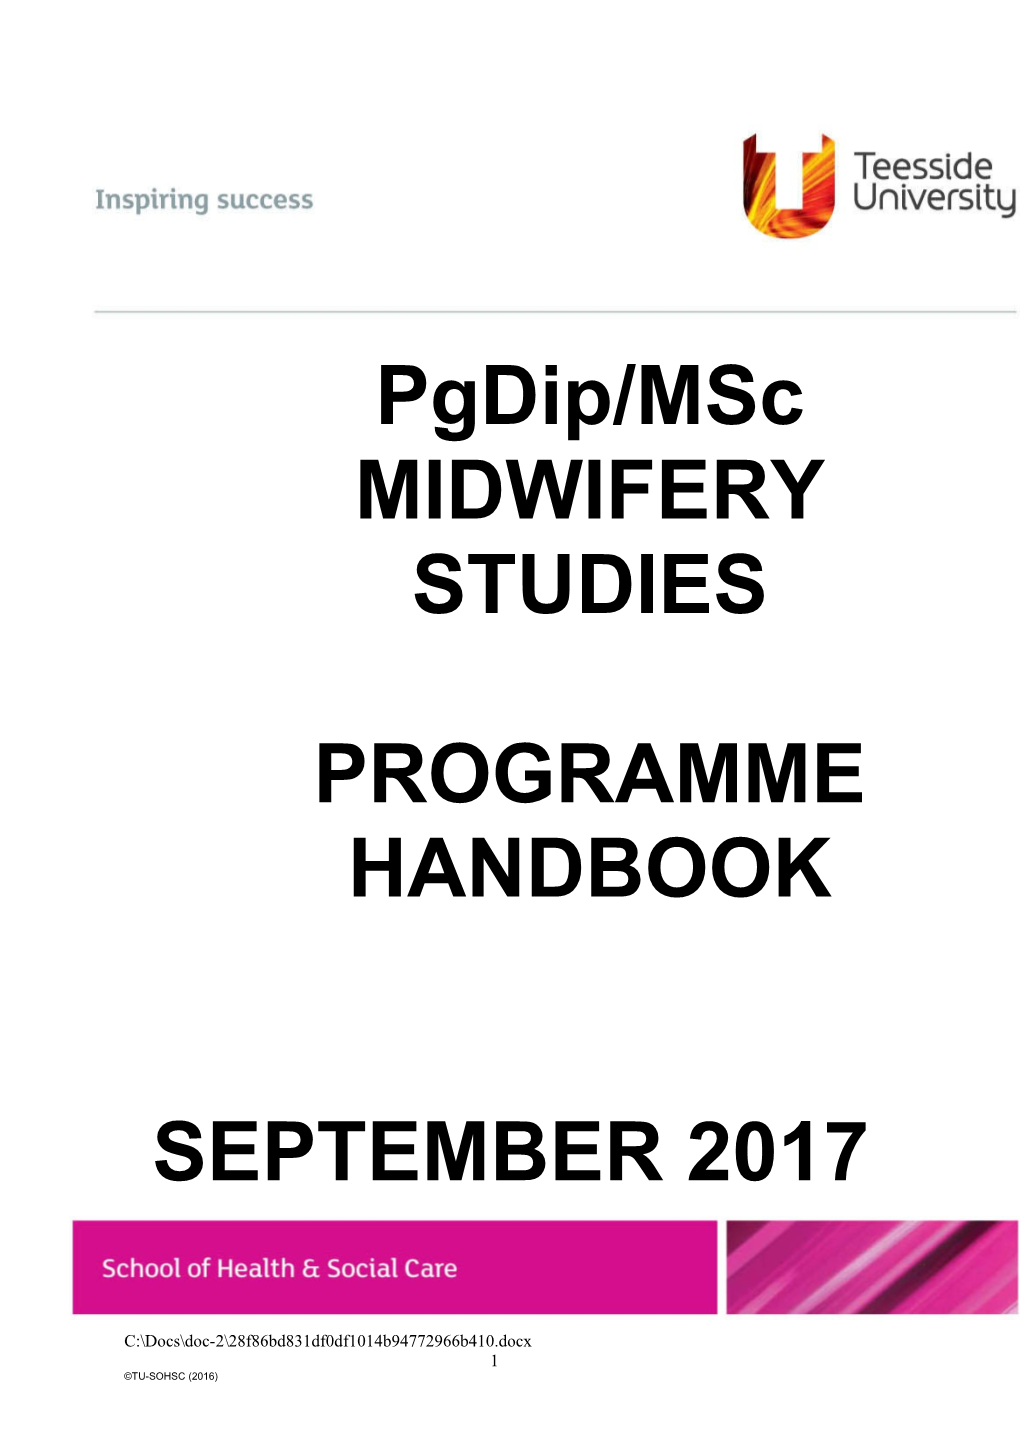 Pgdip/Msc MIDWIFERY STUDIES